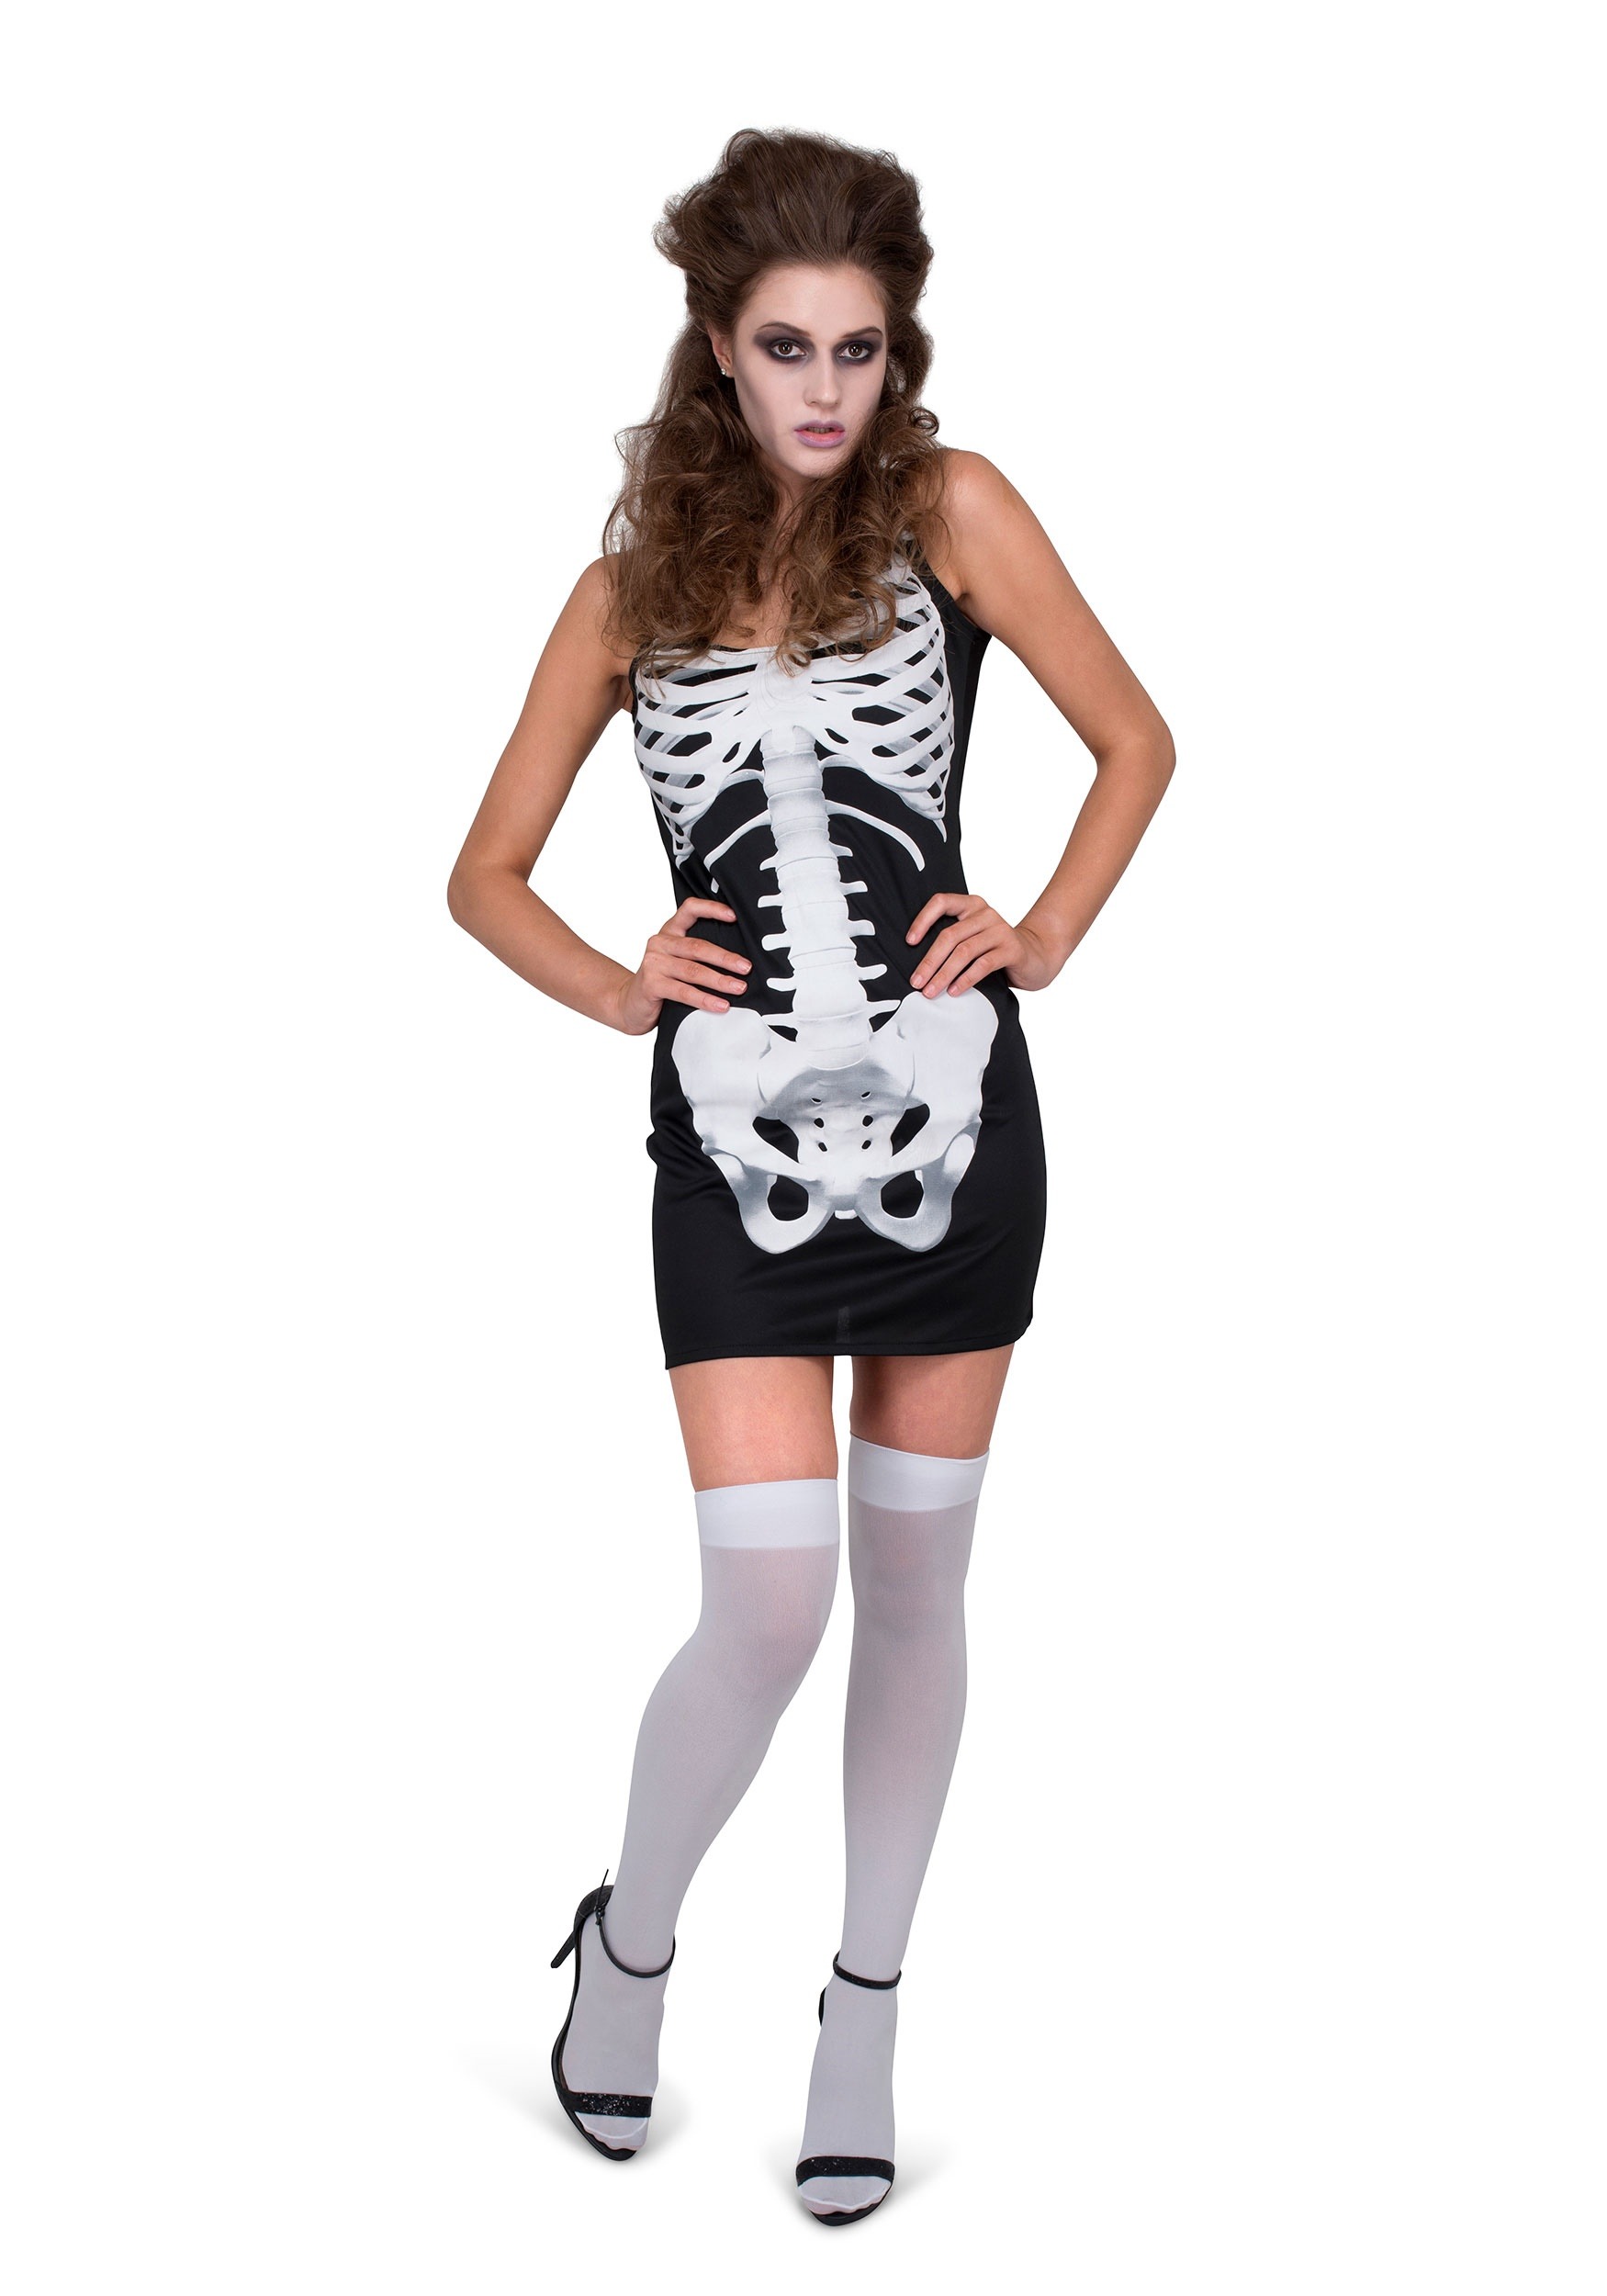 Skeleton Dress Costume For Women